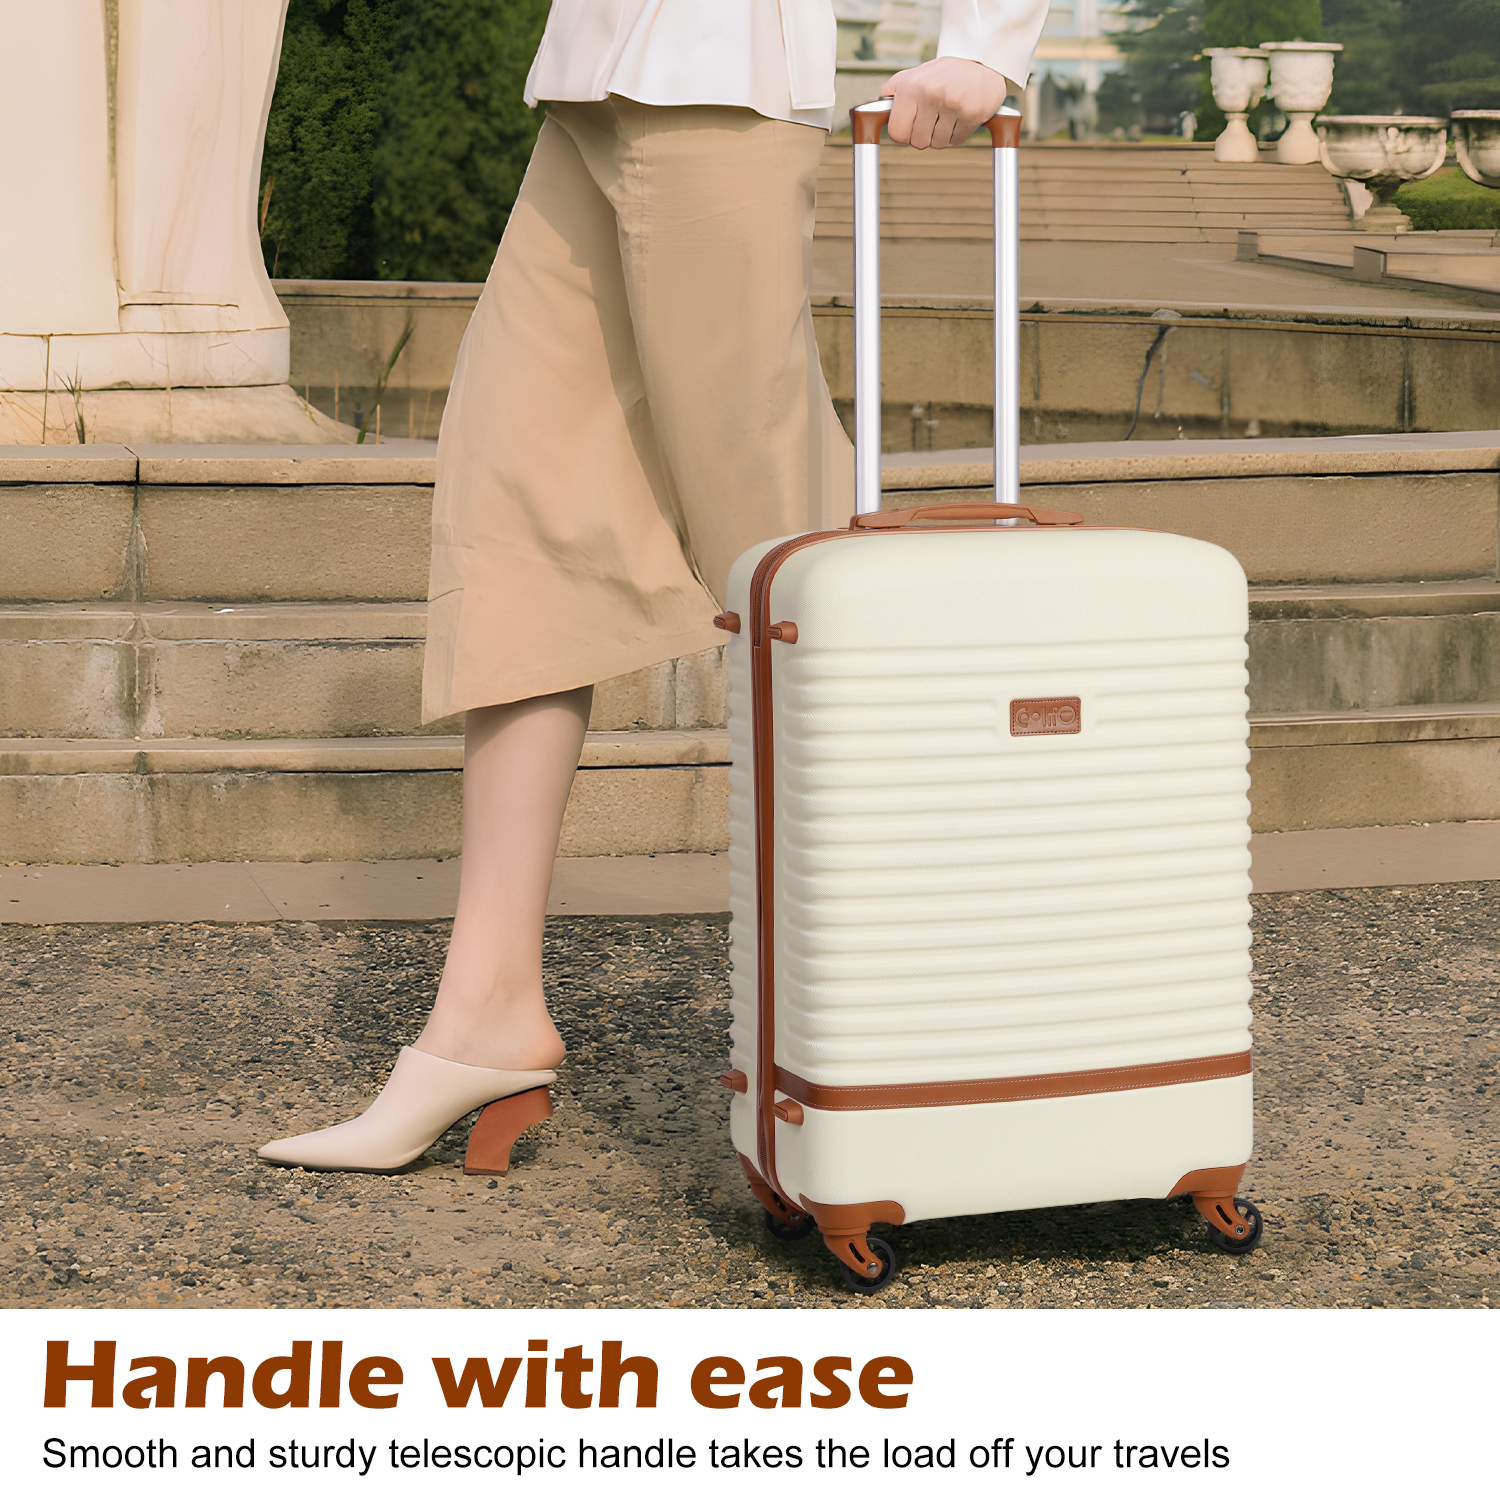 Coolife Suitcase Set 3 Piece Luggage Set Carry On Travel Luggage TSA Lock Spinner Wheels Hardshell Lightweight Luggage Set